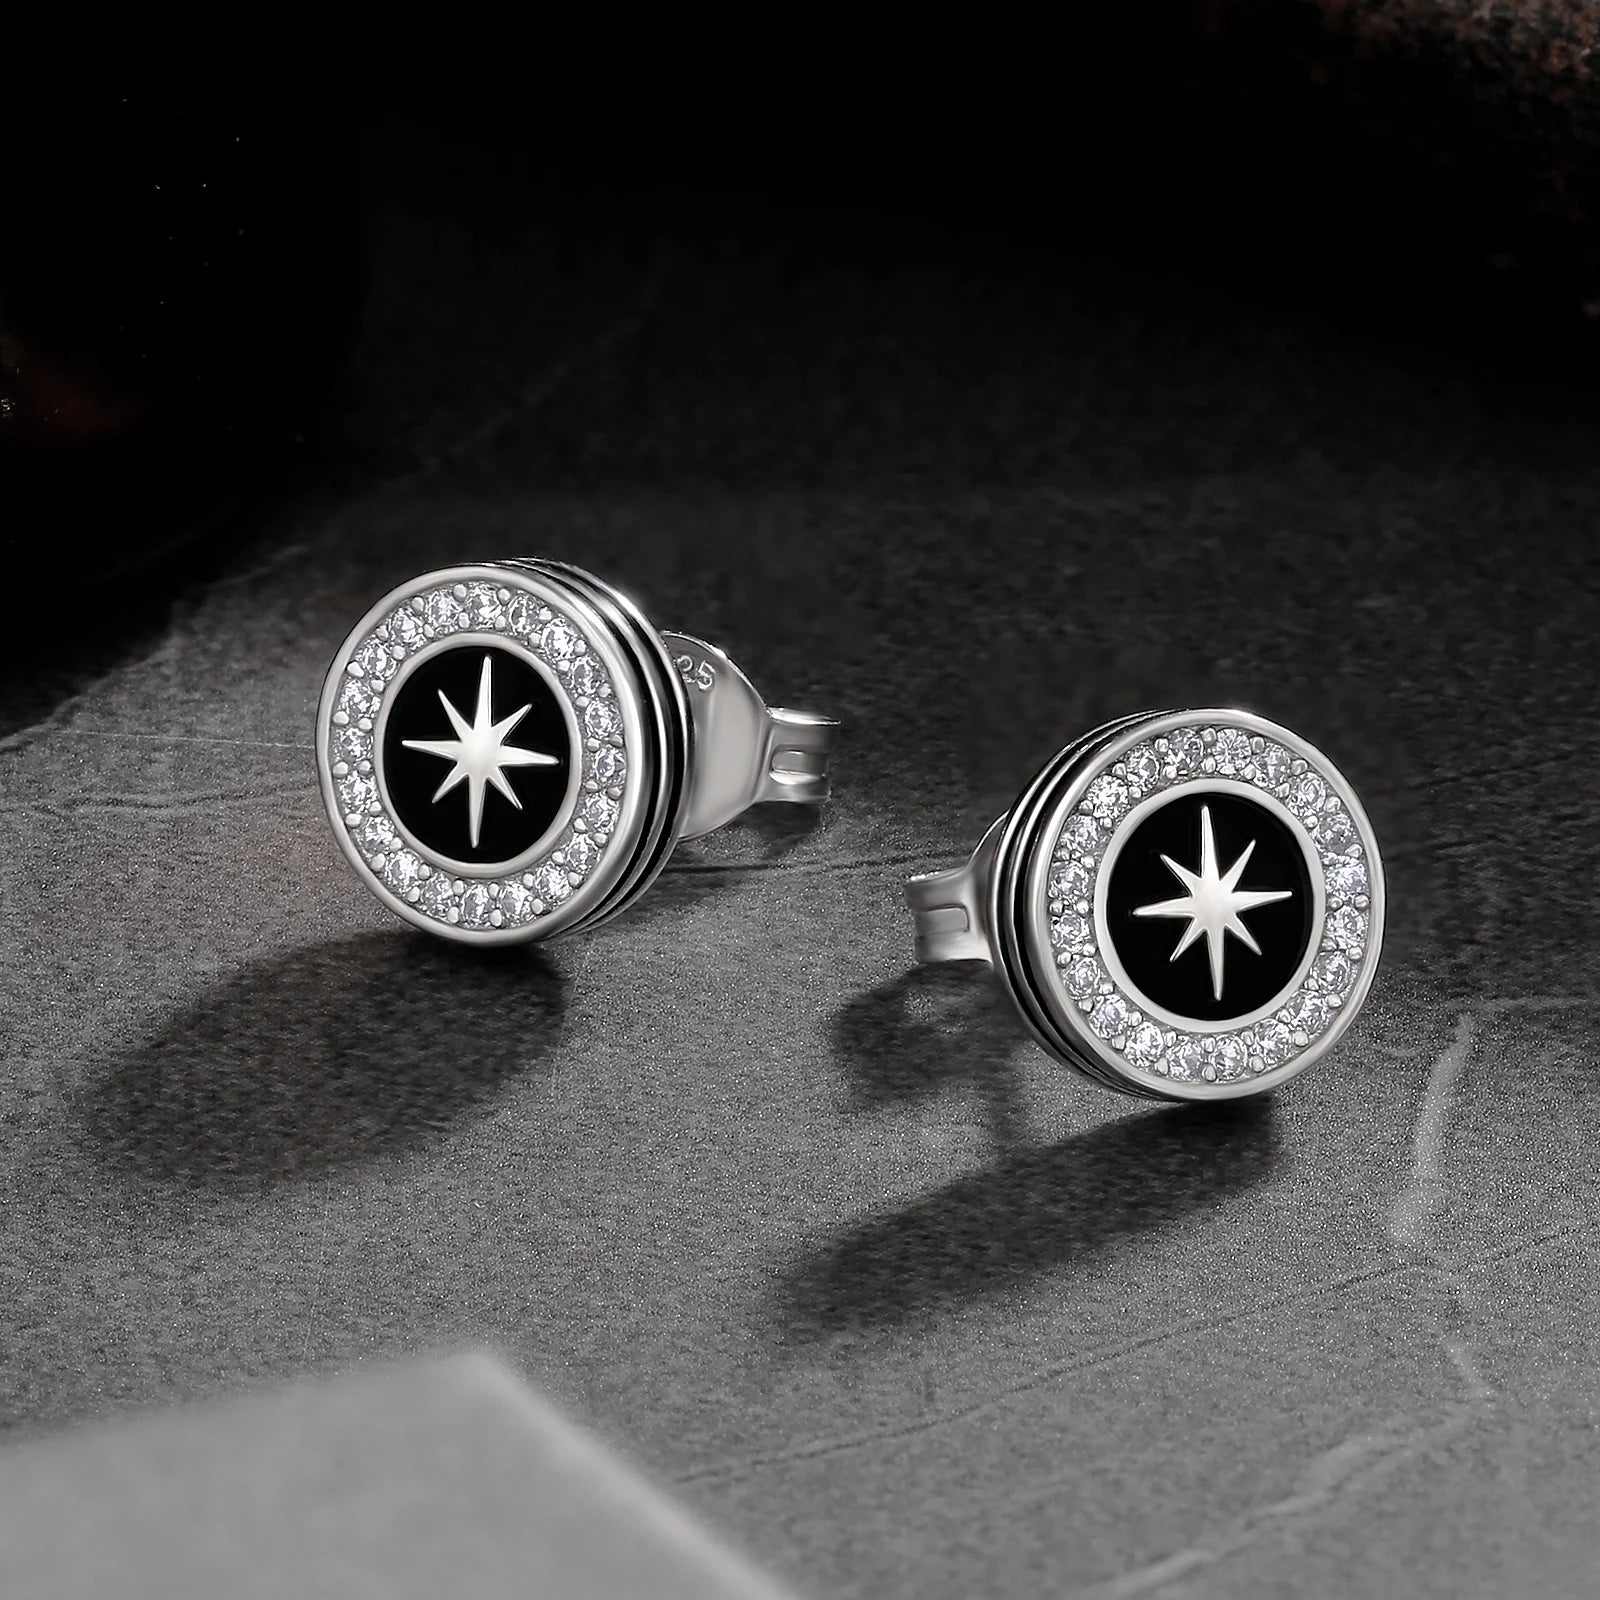 9mm Black Enamel Iced Diamond Stud Earrings - Sun Earrings 